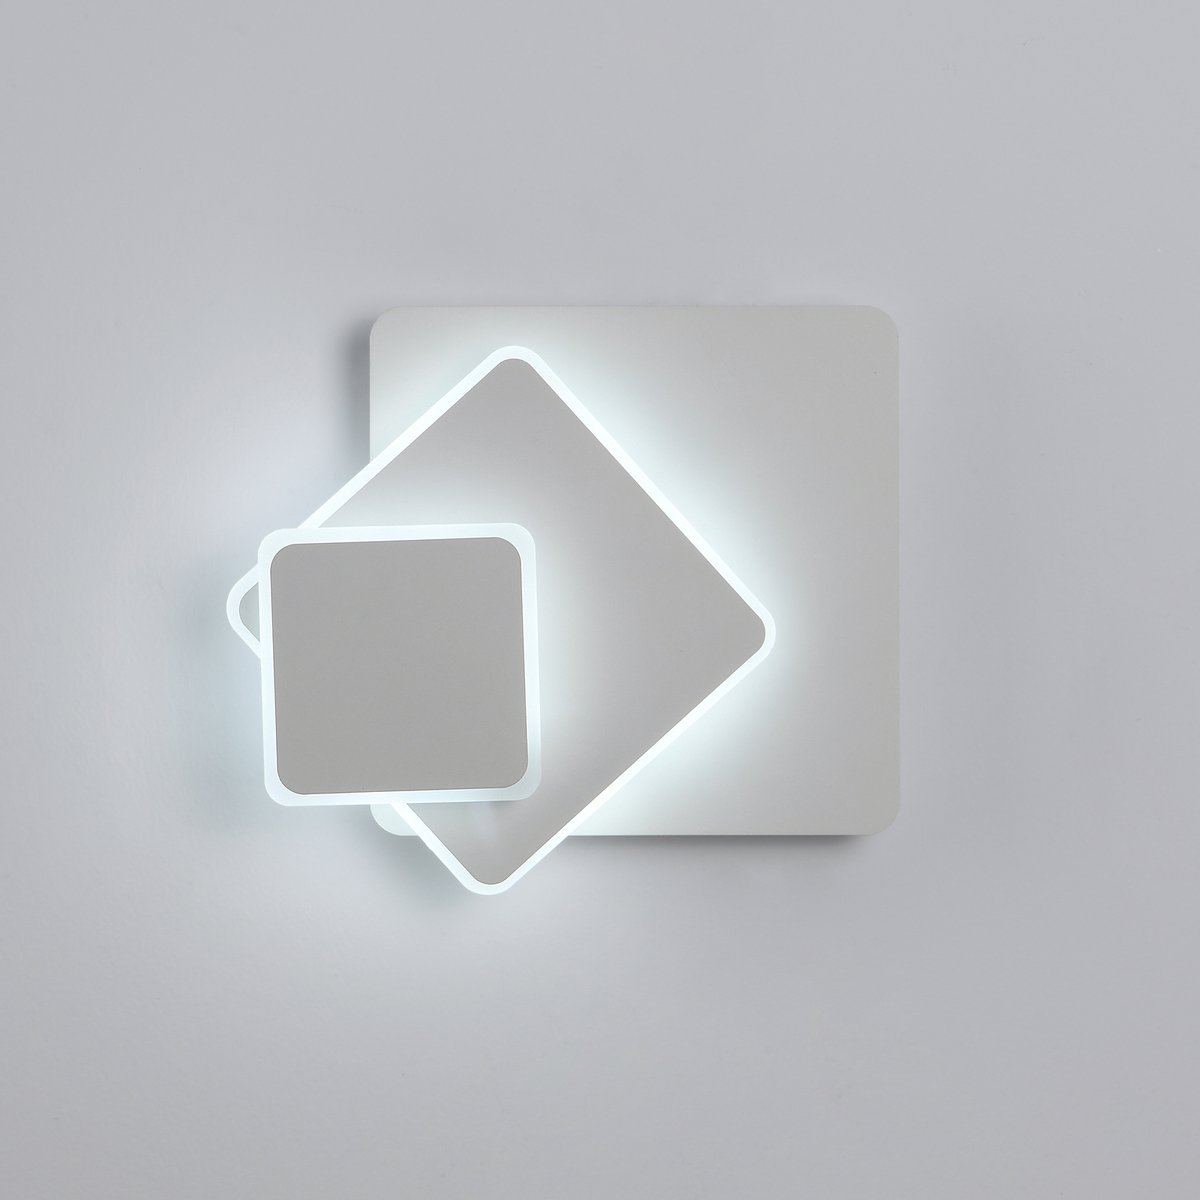 Delaveek-Vierkante Moderne LED Binnen Wandlamp - 15W - Koel Wit 6500K - Acryl & Ijzer - Wit